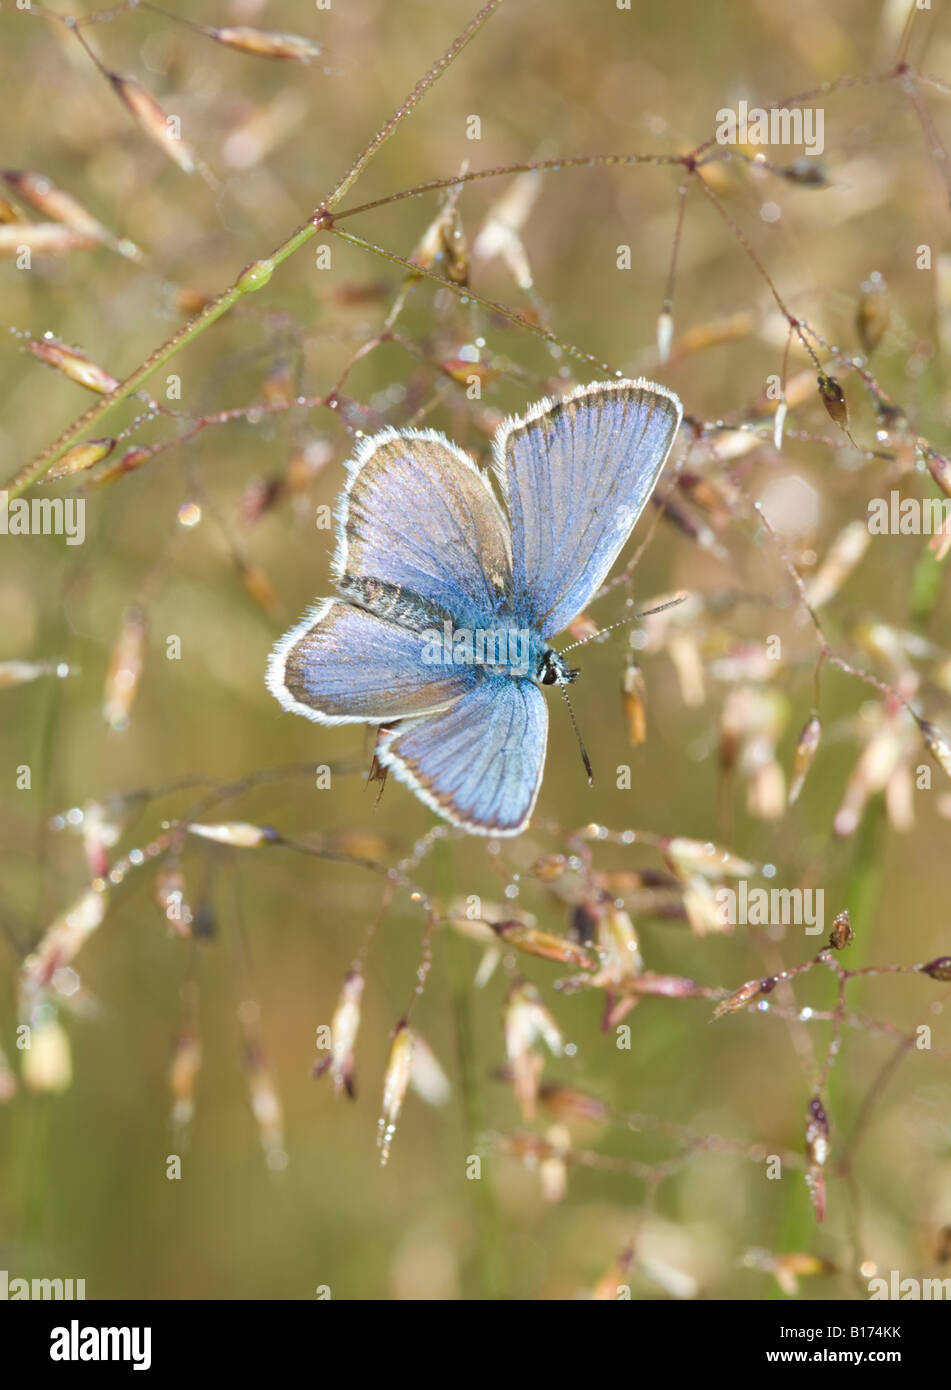 Bleu clouté d'argent, Plebejus argus, mâle s'échauffant au soleil, ailes ouvertes, Iping Common Midhurst West Sussex UK Mai Banque D'Images